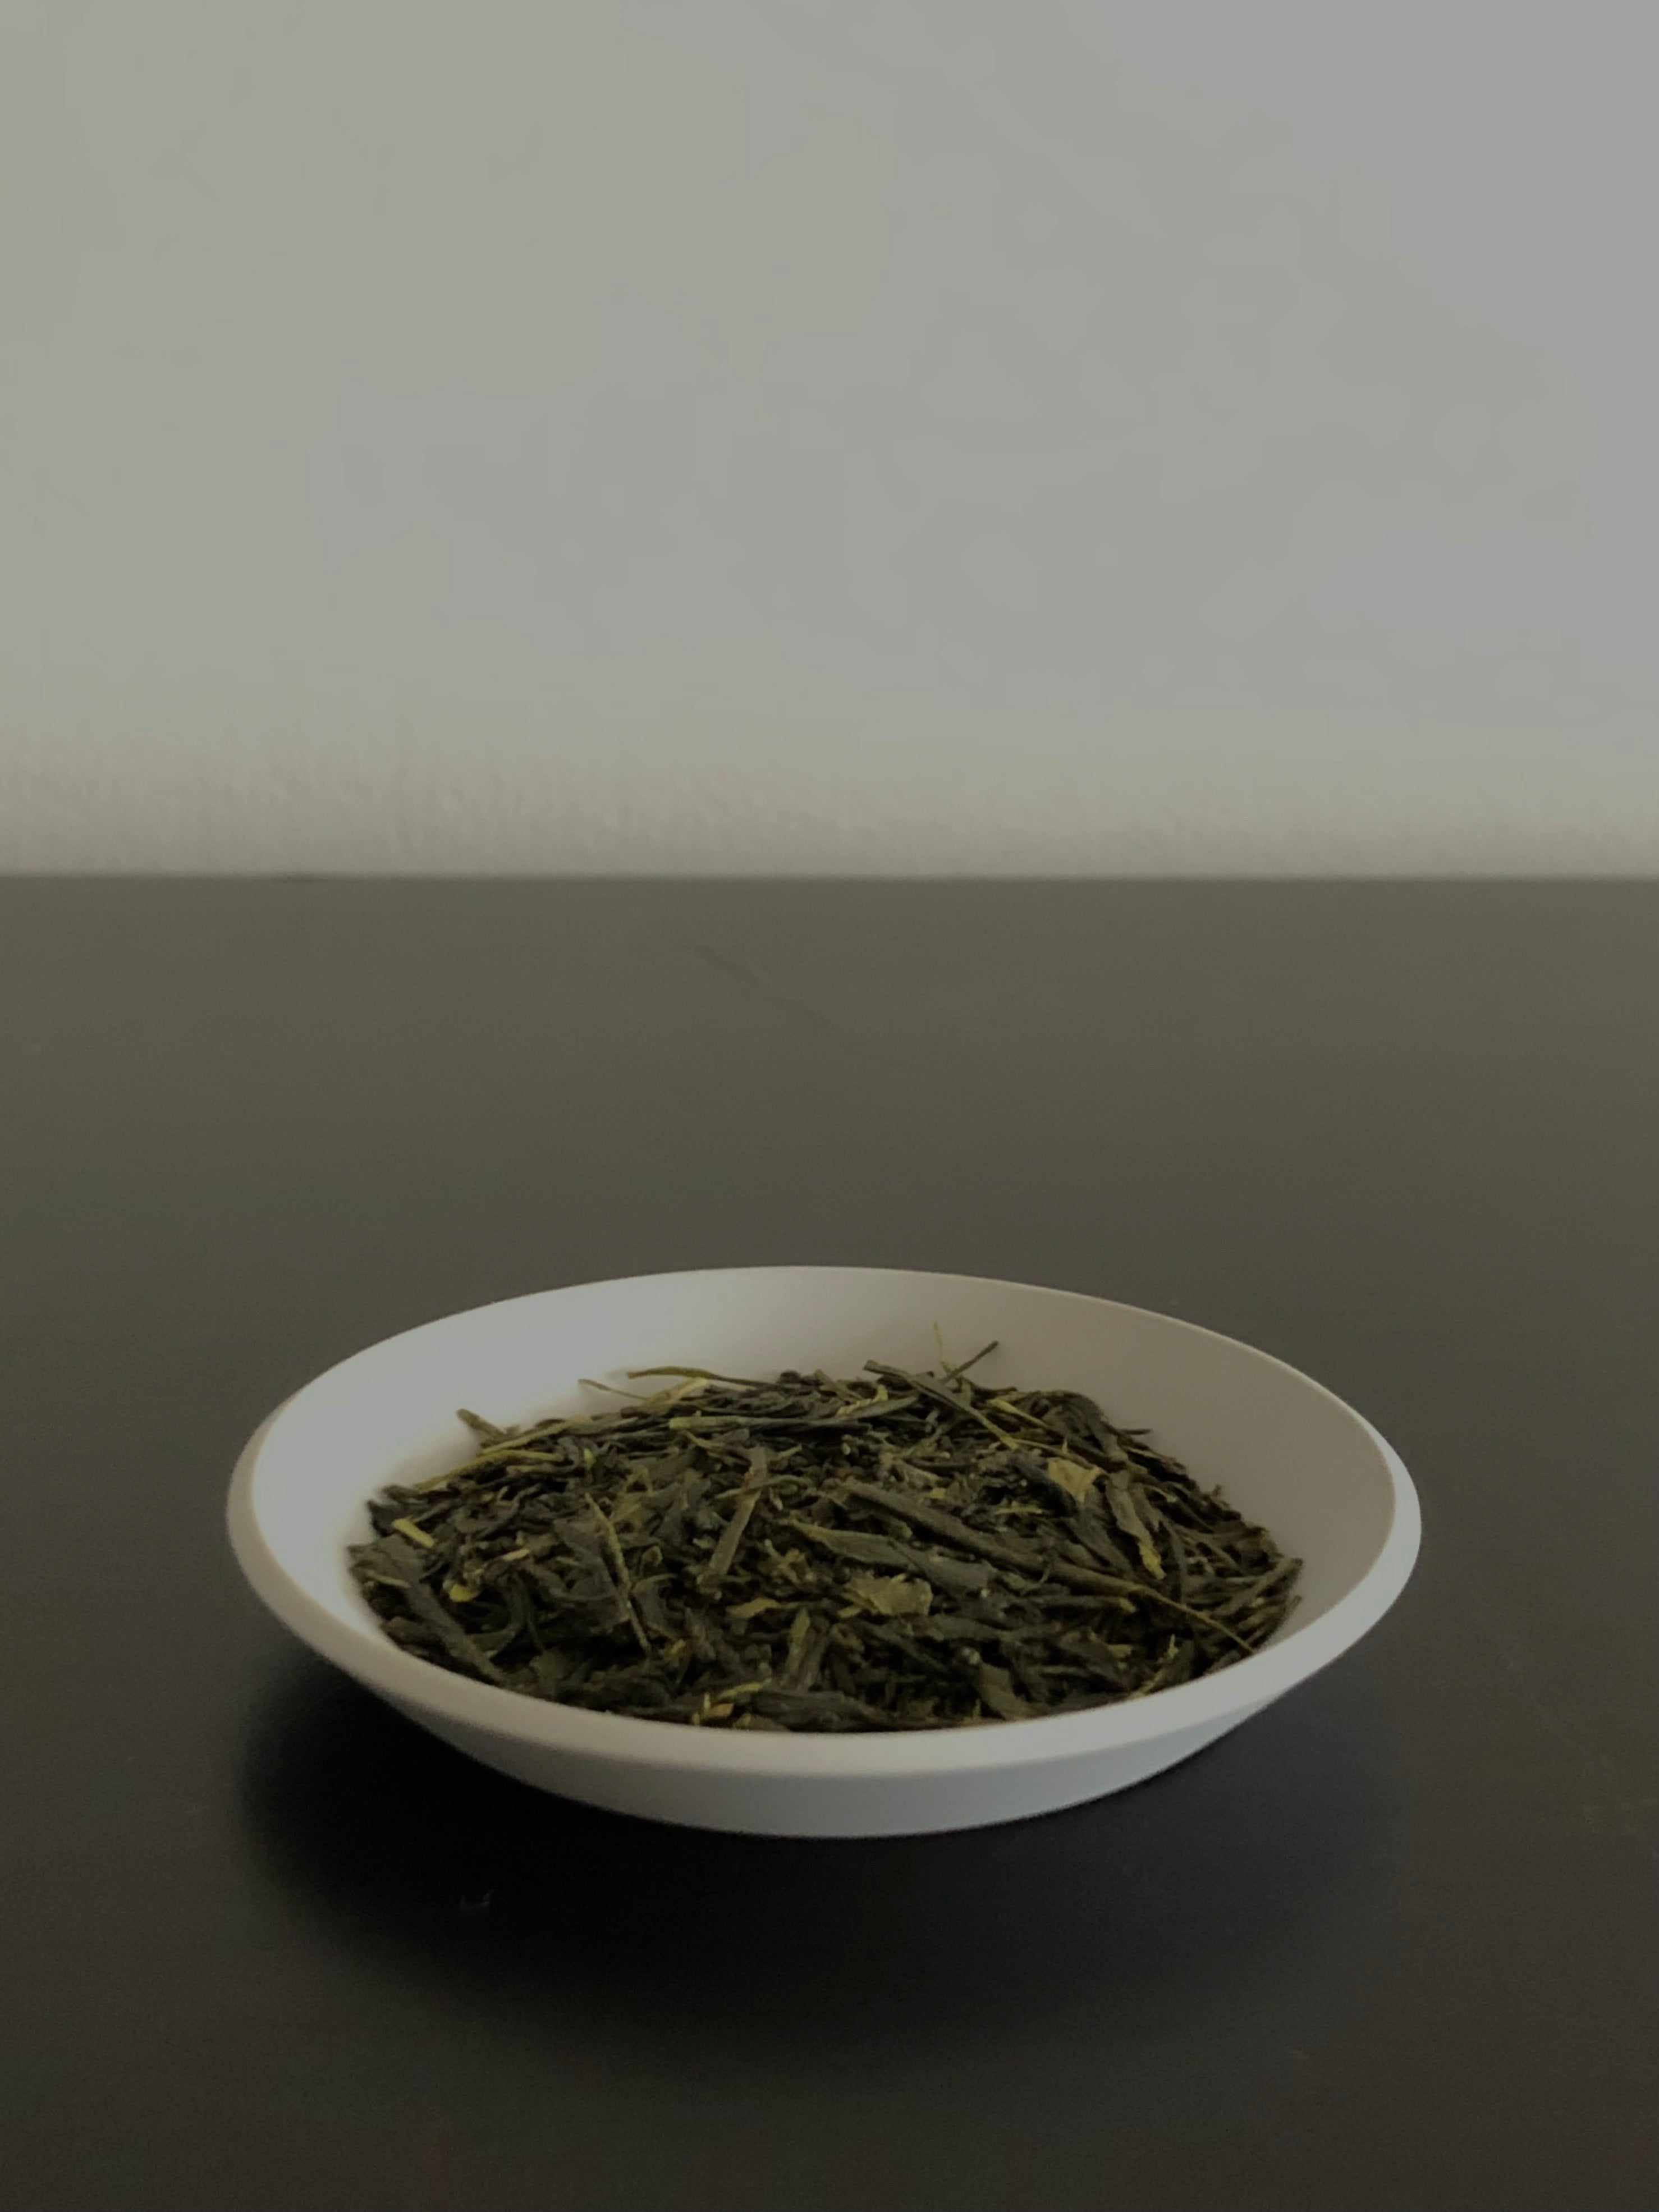 Saemidori sencha green tea loose leaf side view  from Yame Fukuoka sold by Sabo Tea Australia – Chiyonoen